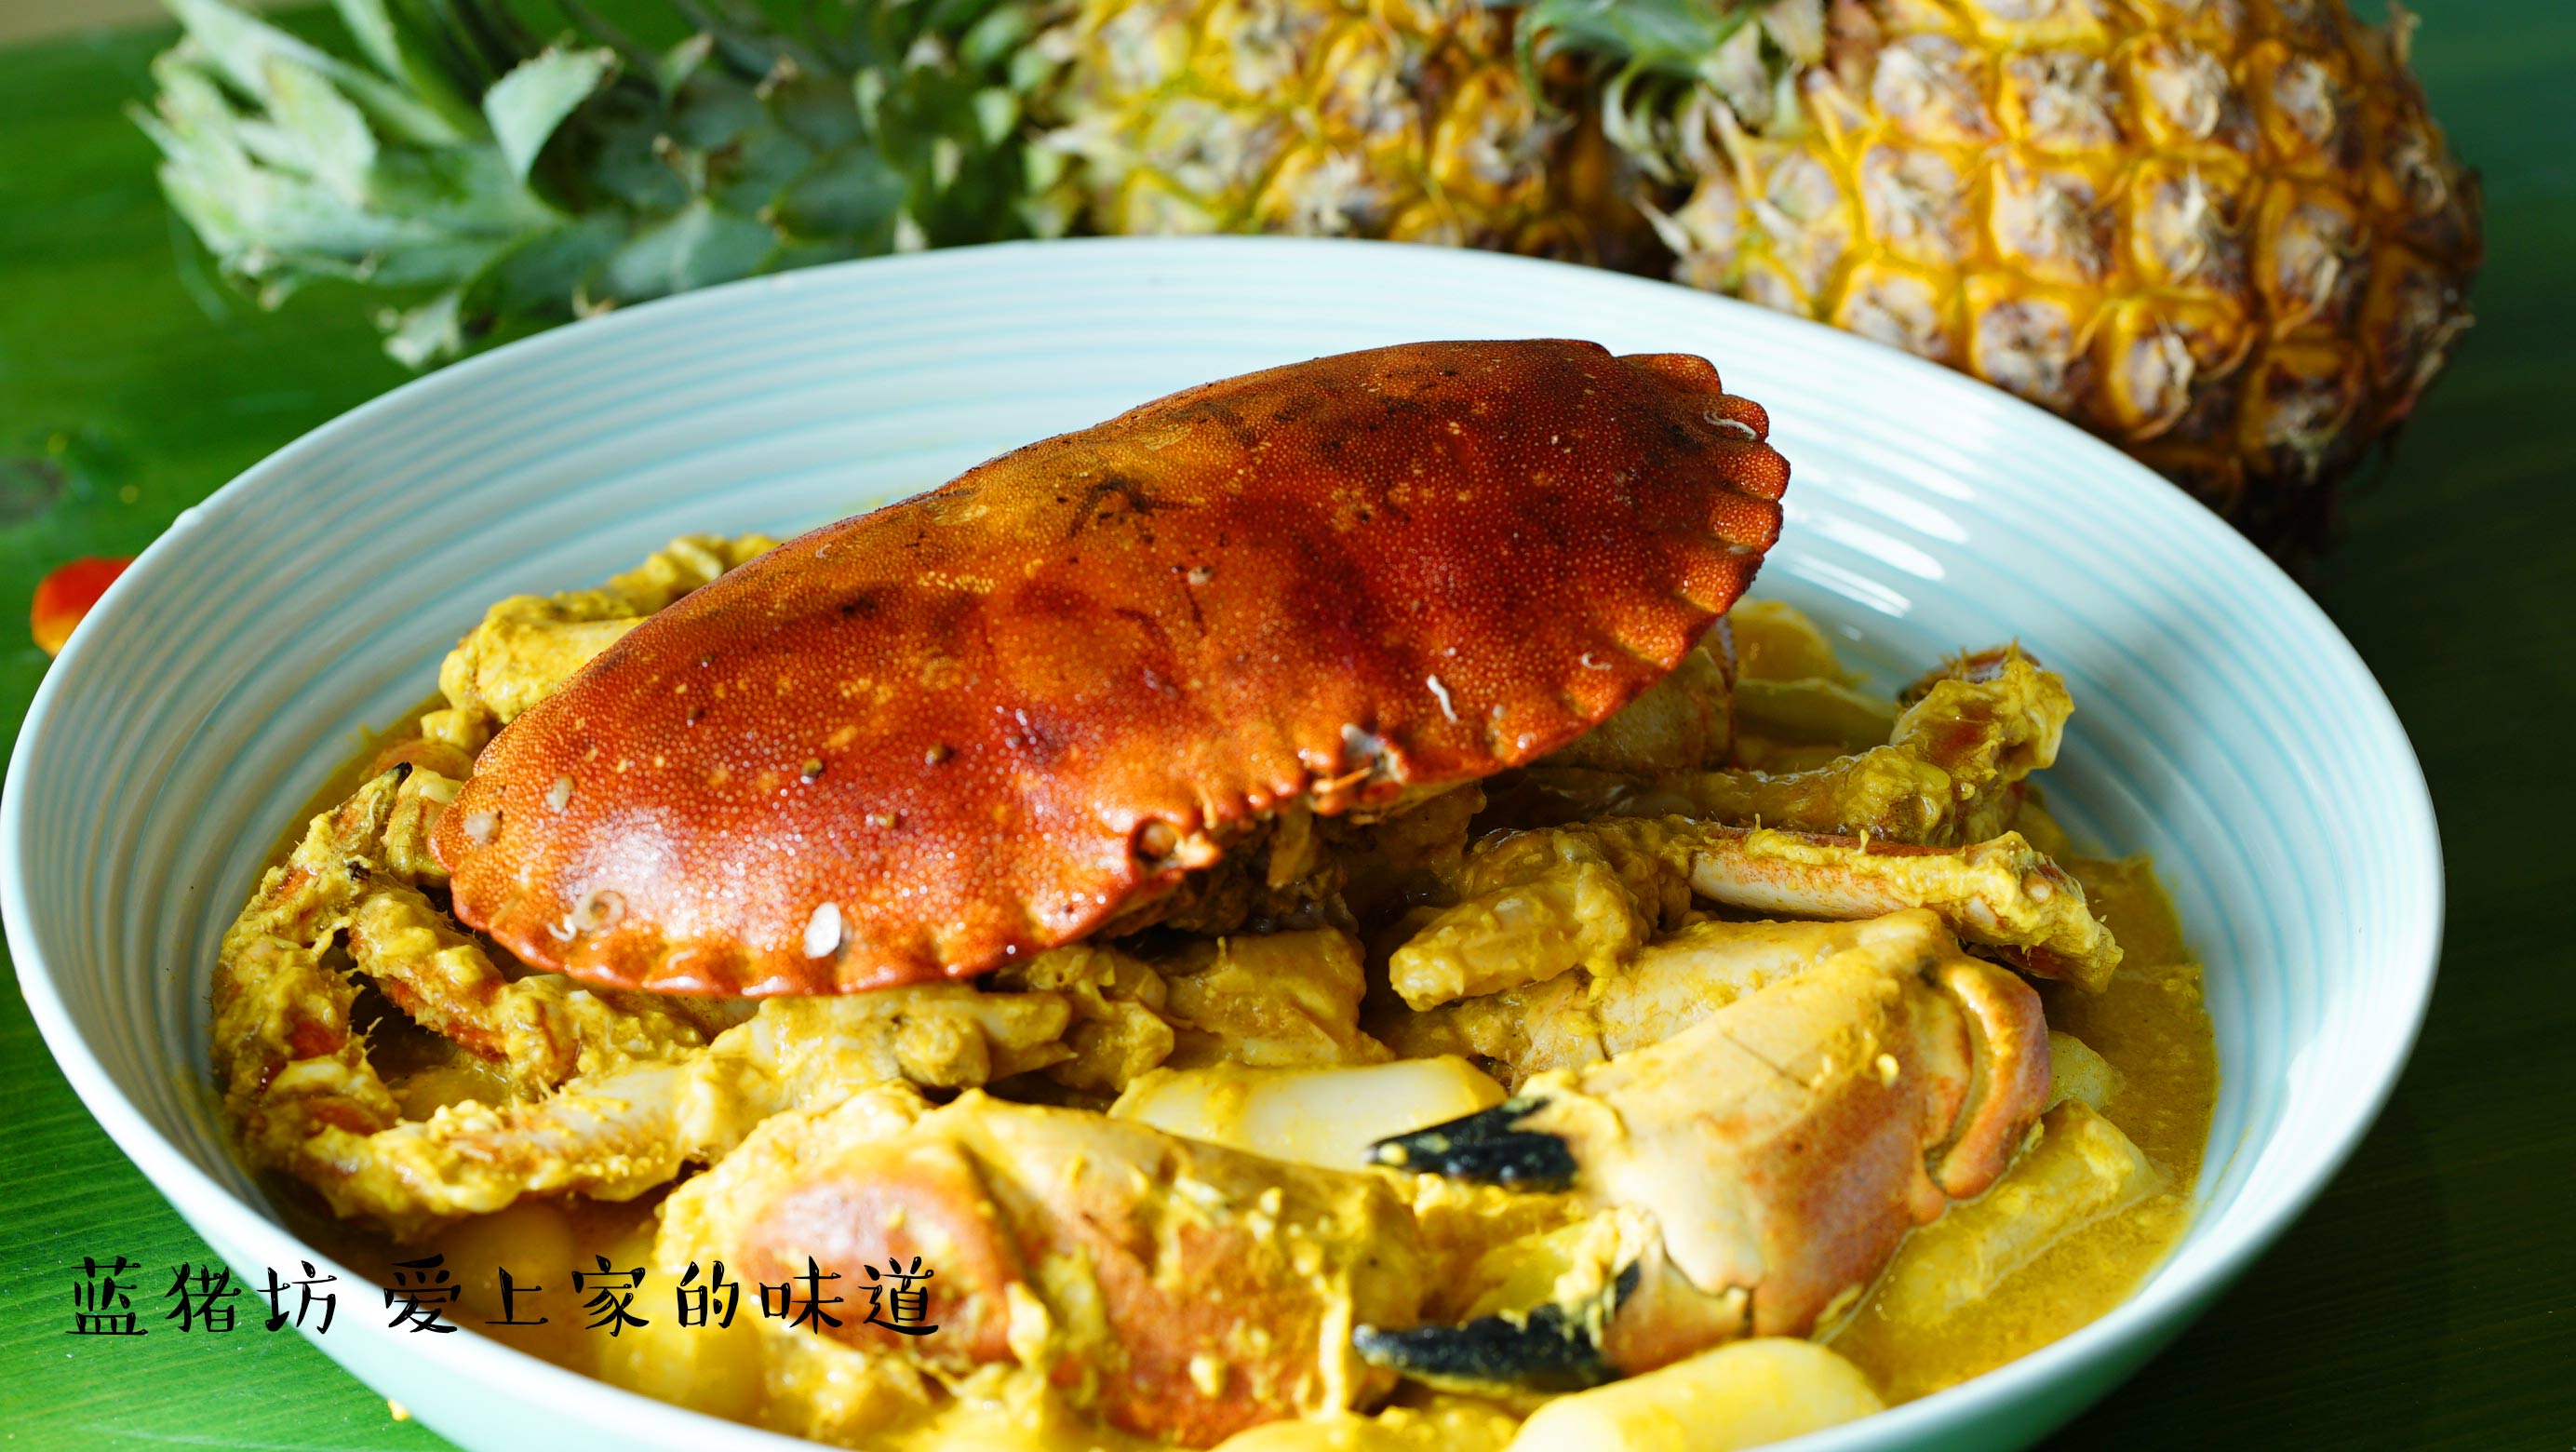 螃蟹的最新做法,香喷喷的面包蟹,满足全家人的胃,春节家宴必备